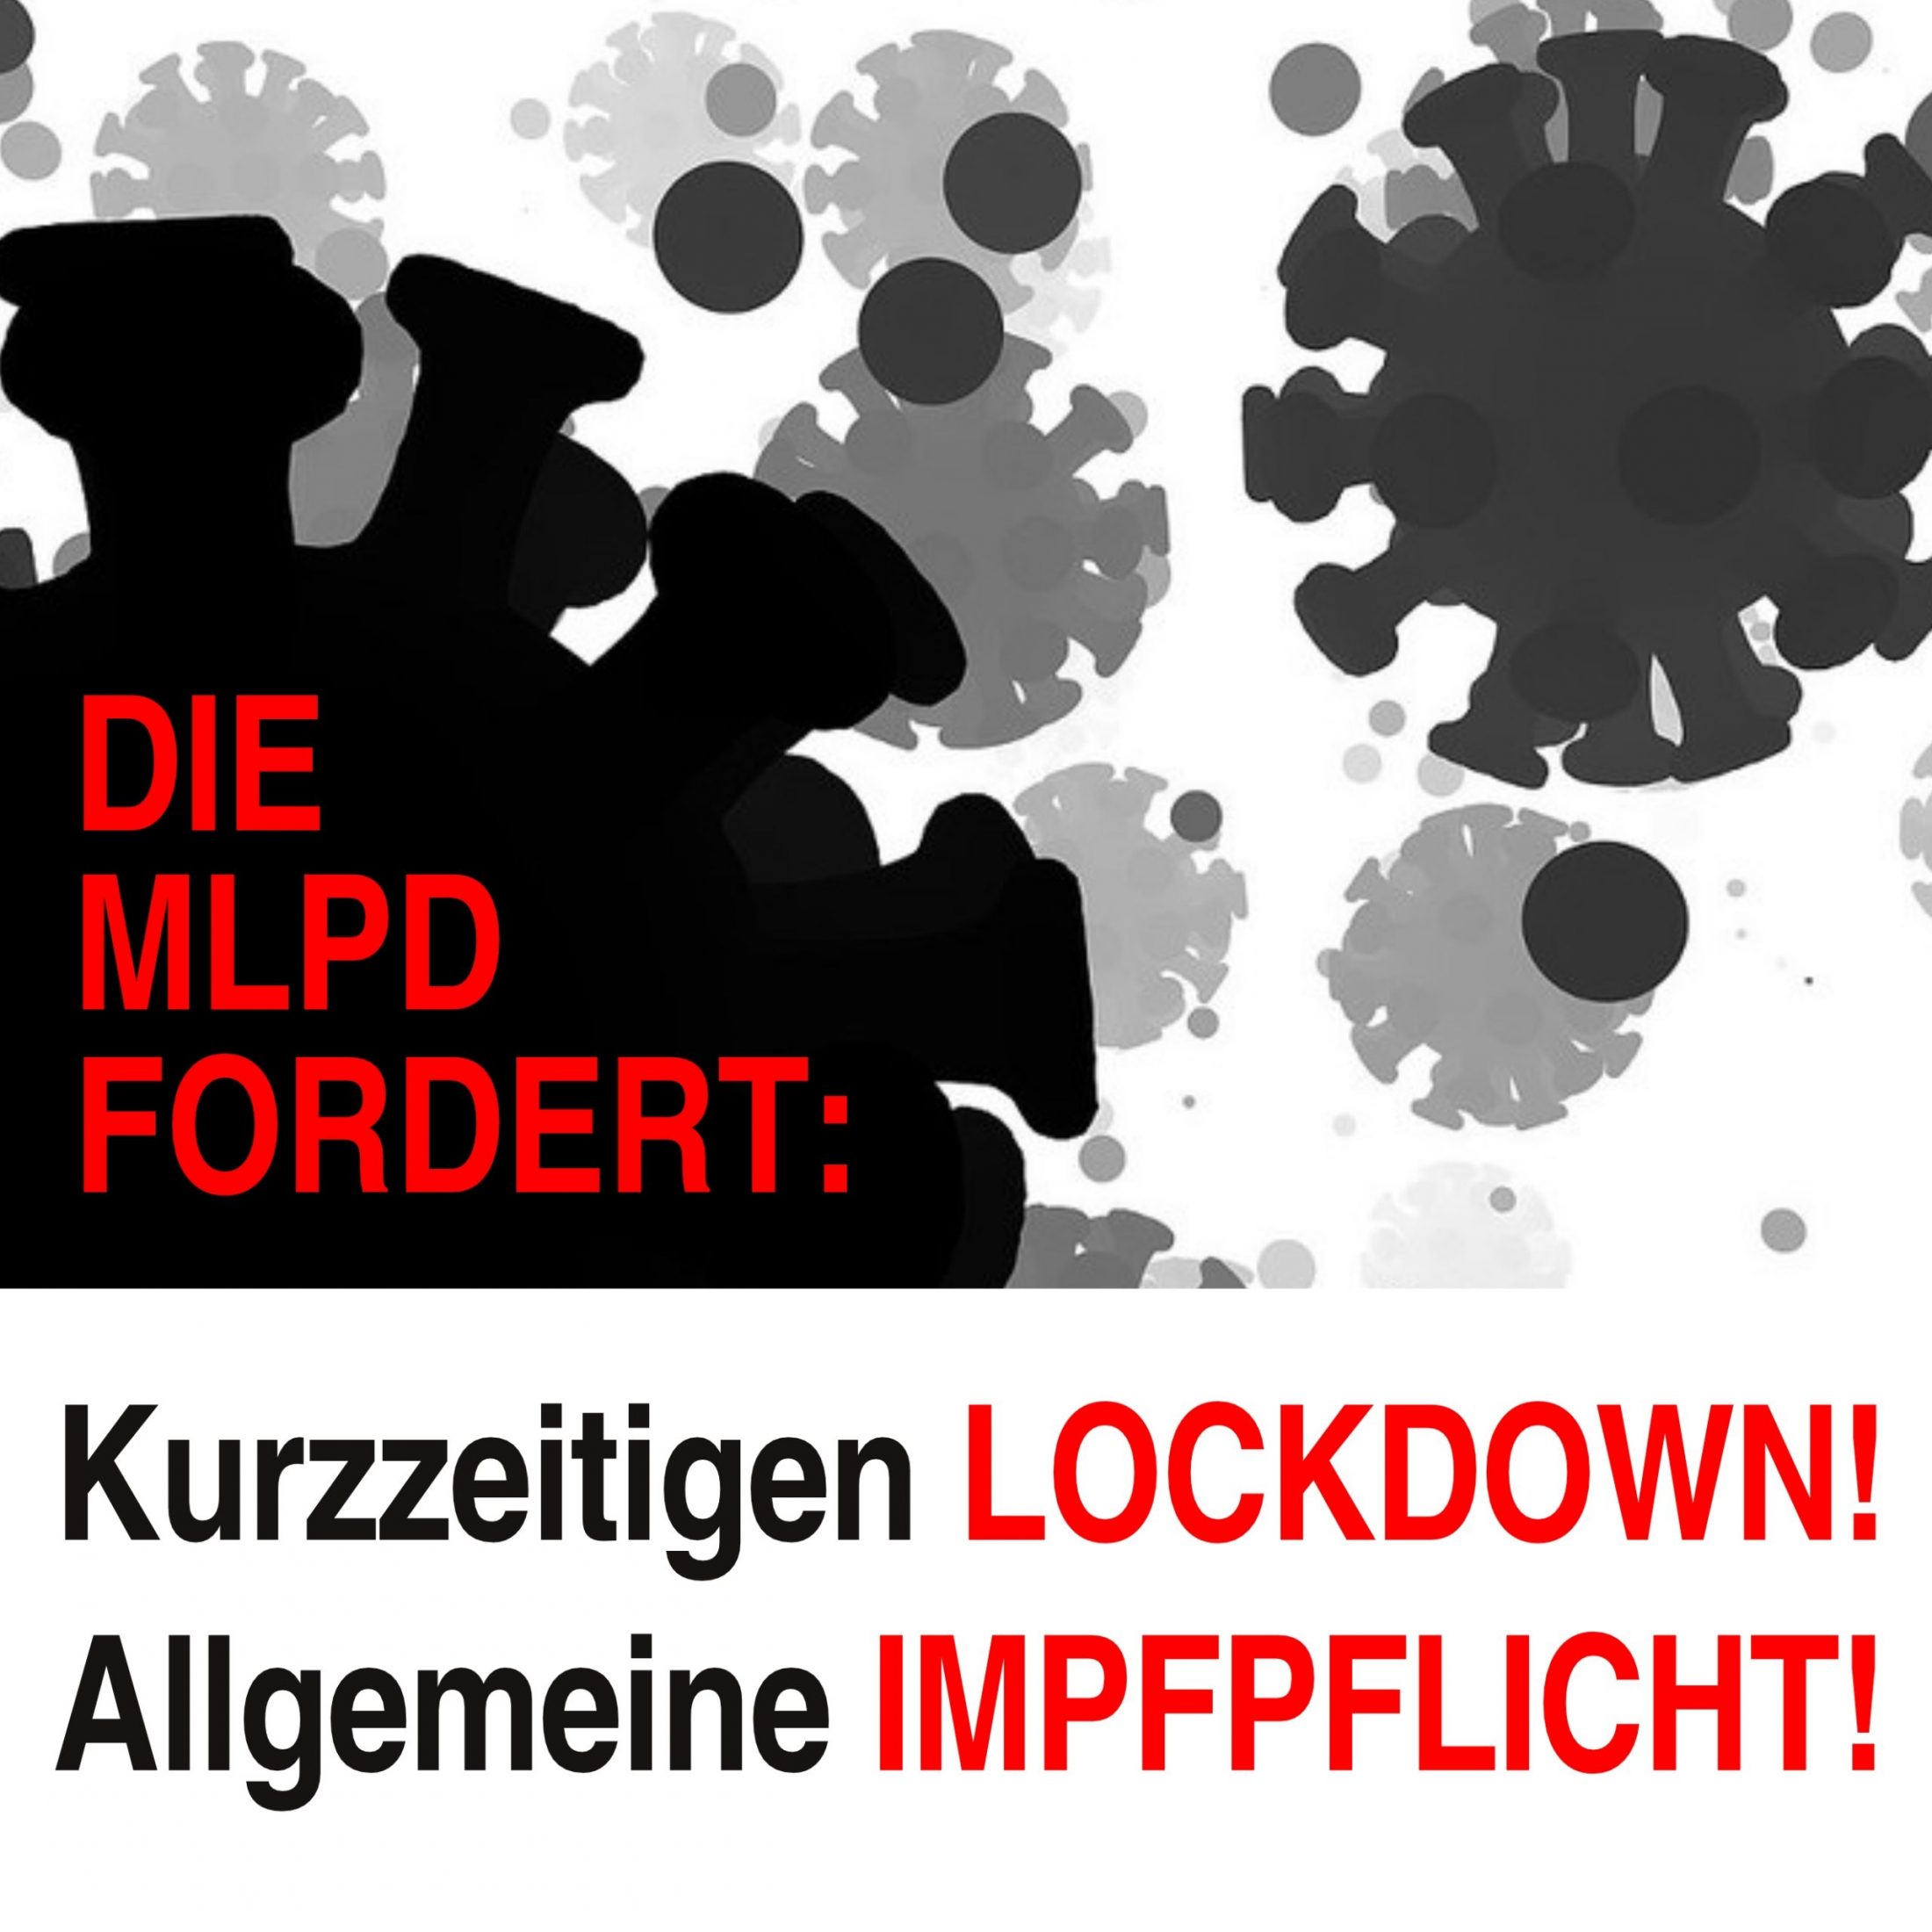 MLPD fordert Lockdown und Impfpflicht